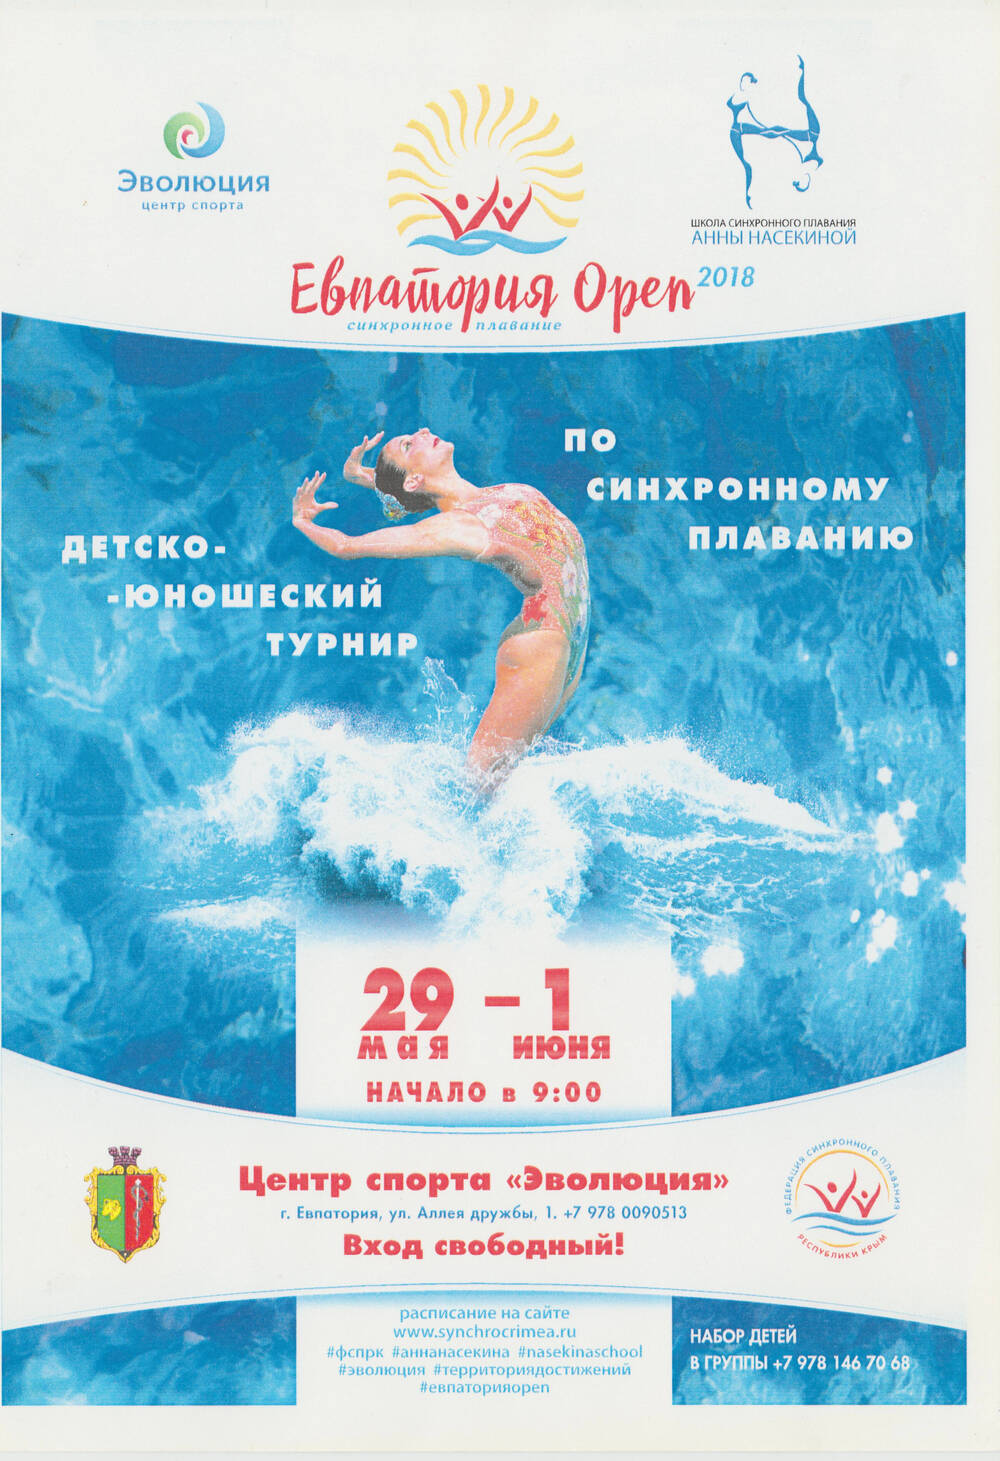 Листовка. Евпатория Open. Детско-юношеский турнир по синхронному плаванию. Евпатория. 2018 г.